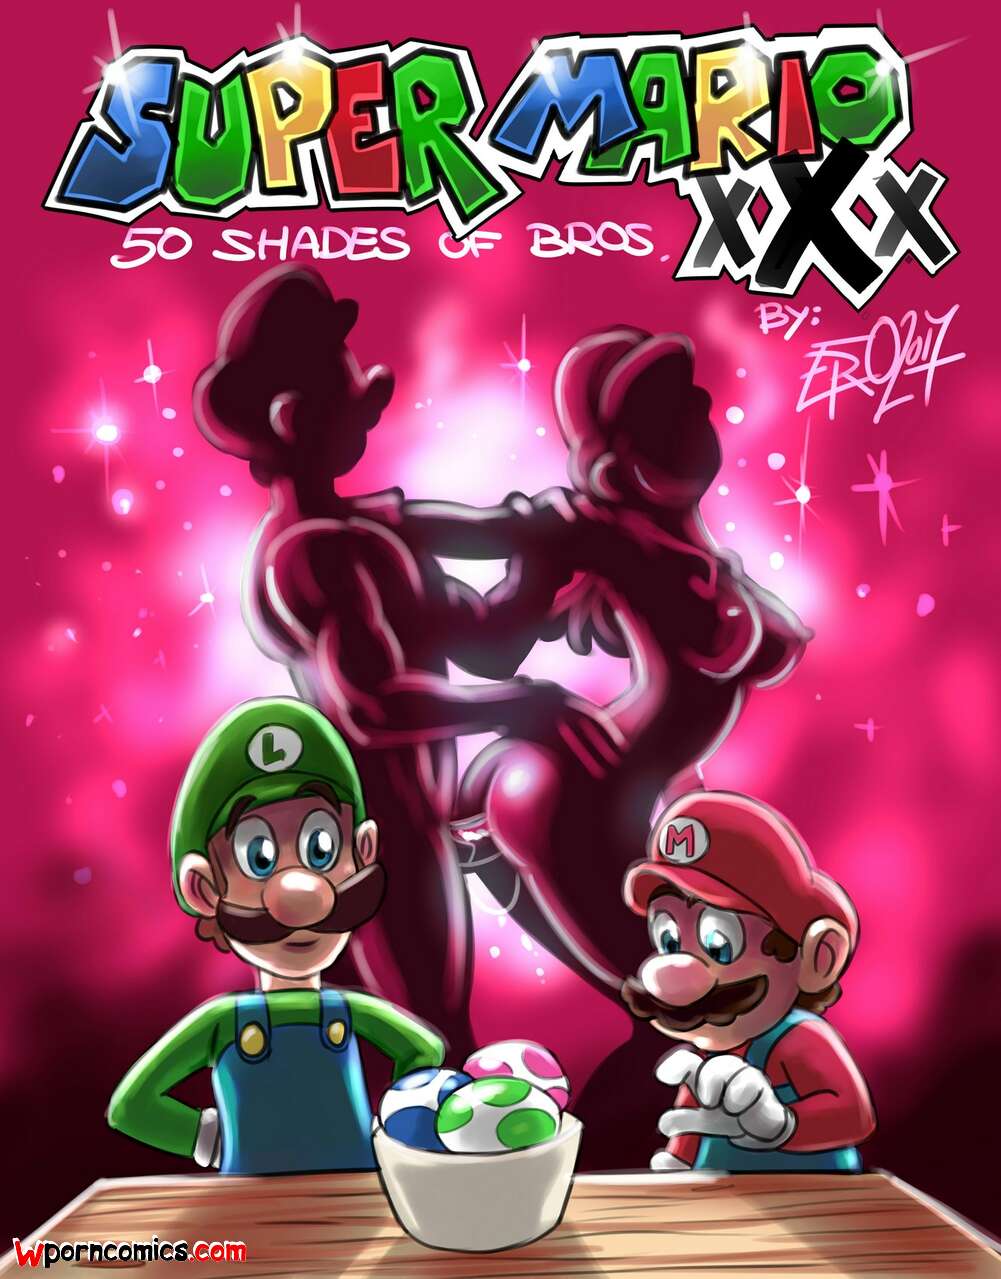 Super Mario Porn Games - âœ…ï¸ Porn comic Super Mario xXx. 50 Shades of Bros. Psicoero. Sex comic of  the brothers | Porn comics in English for adults only | sexkomix2.com